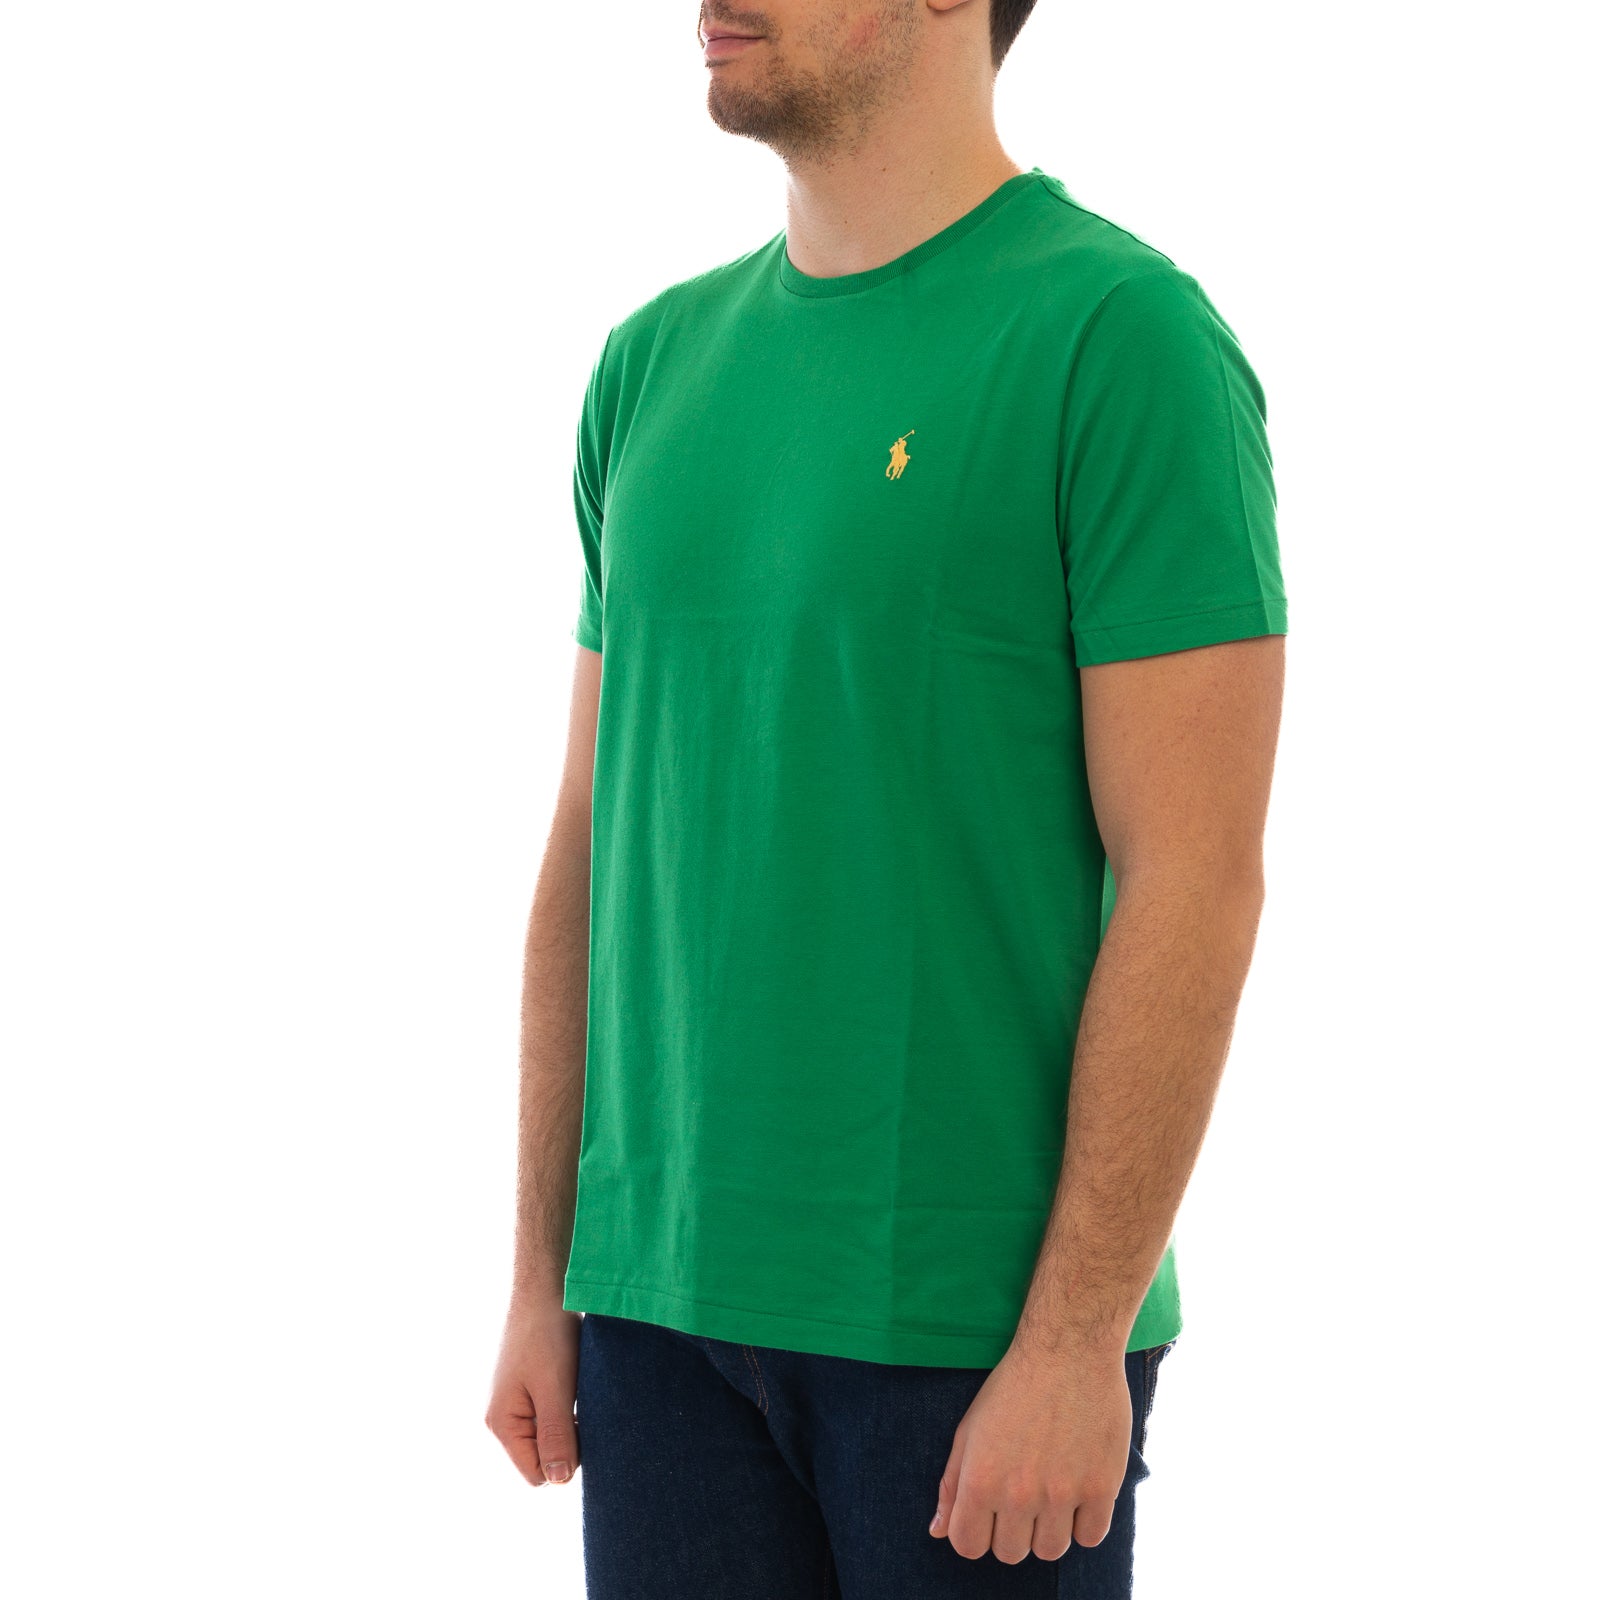 T-shirt POLO RALPH LAUREN
Lifeboat green